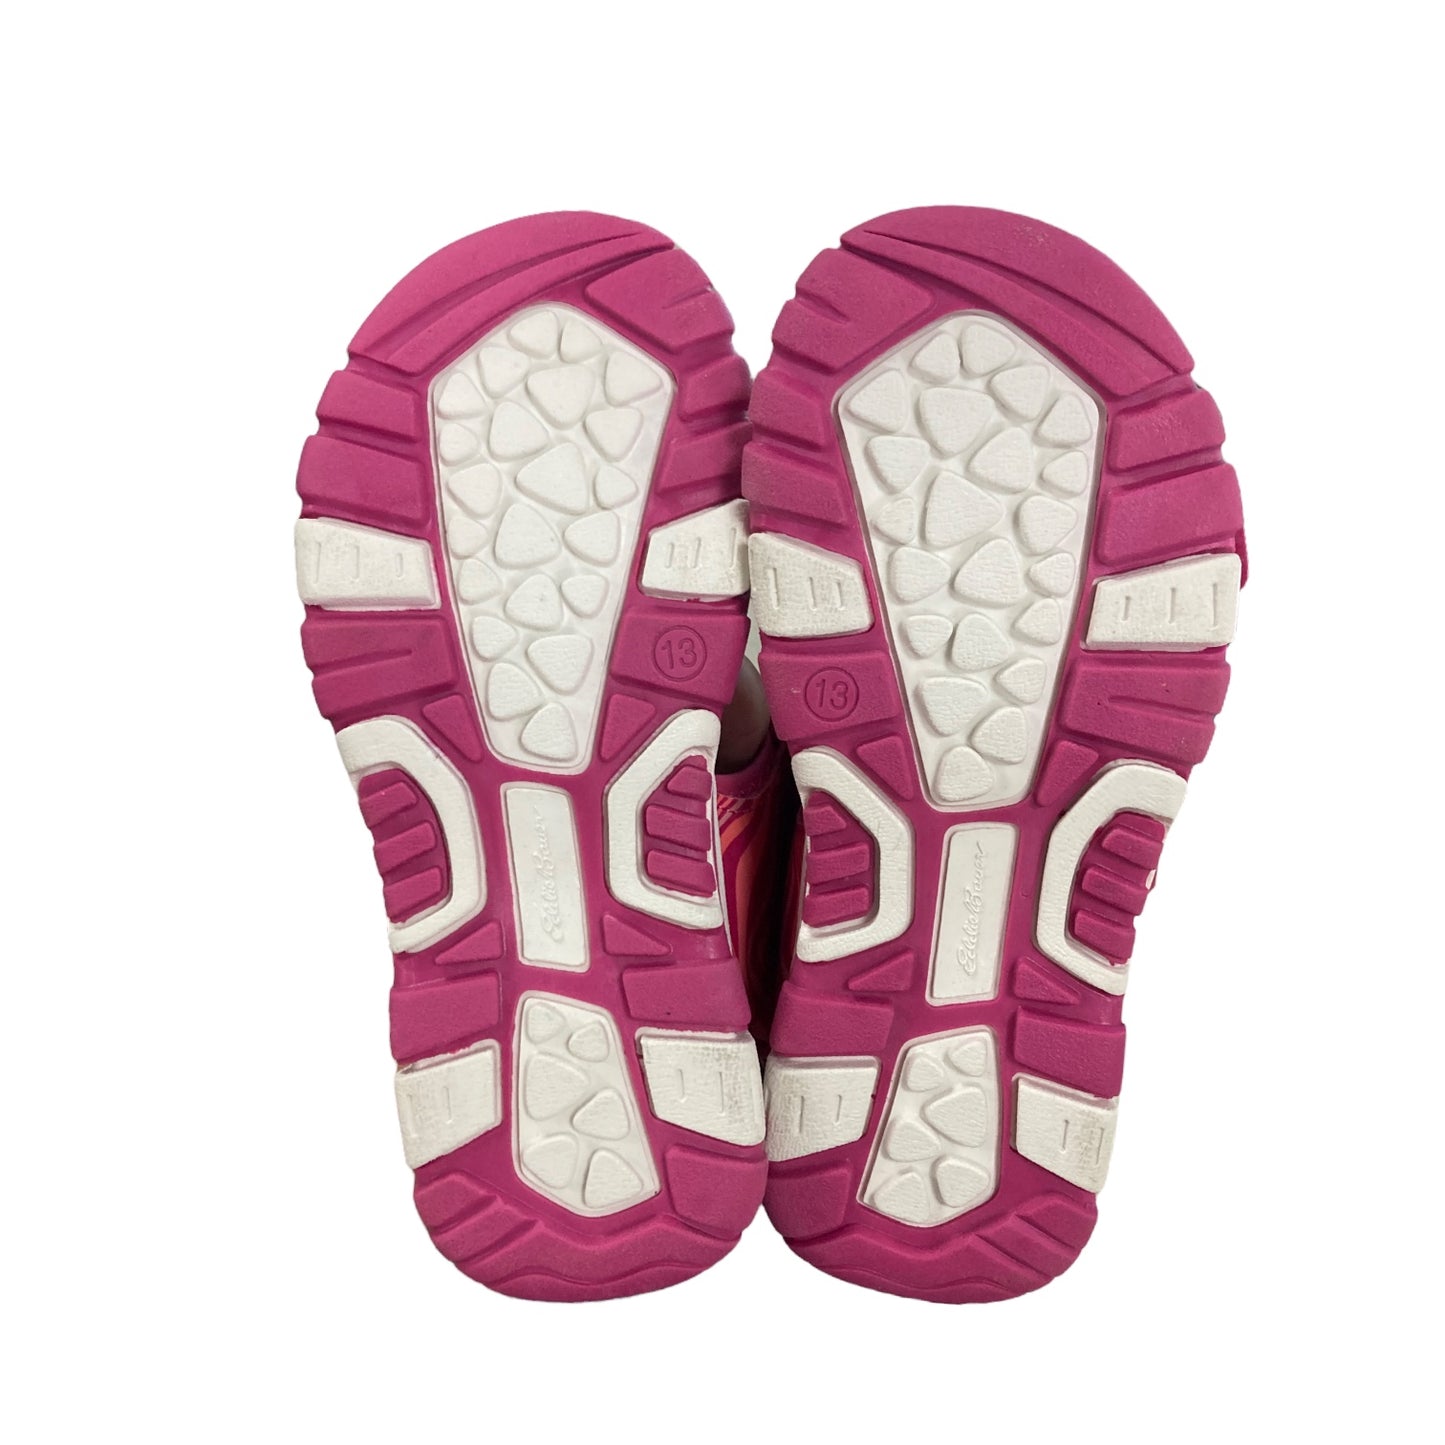 Eddie Bauer Big Girl's Adjustable Strap Jordan River Sandal, Pink Waves